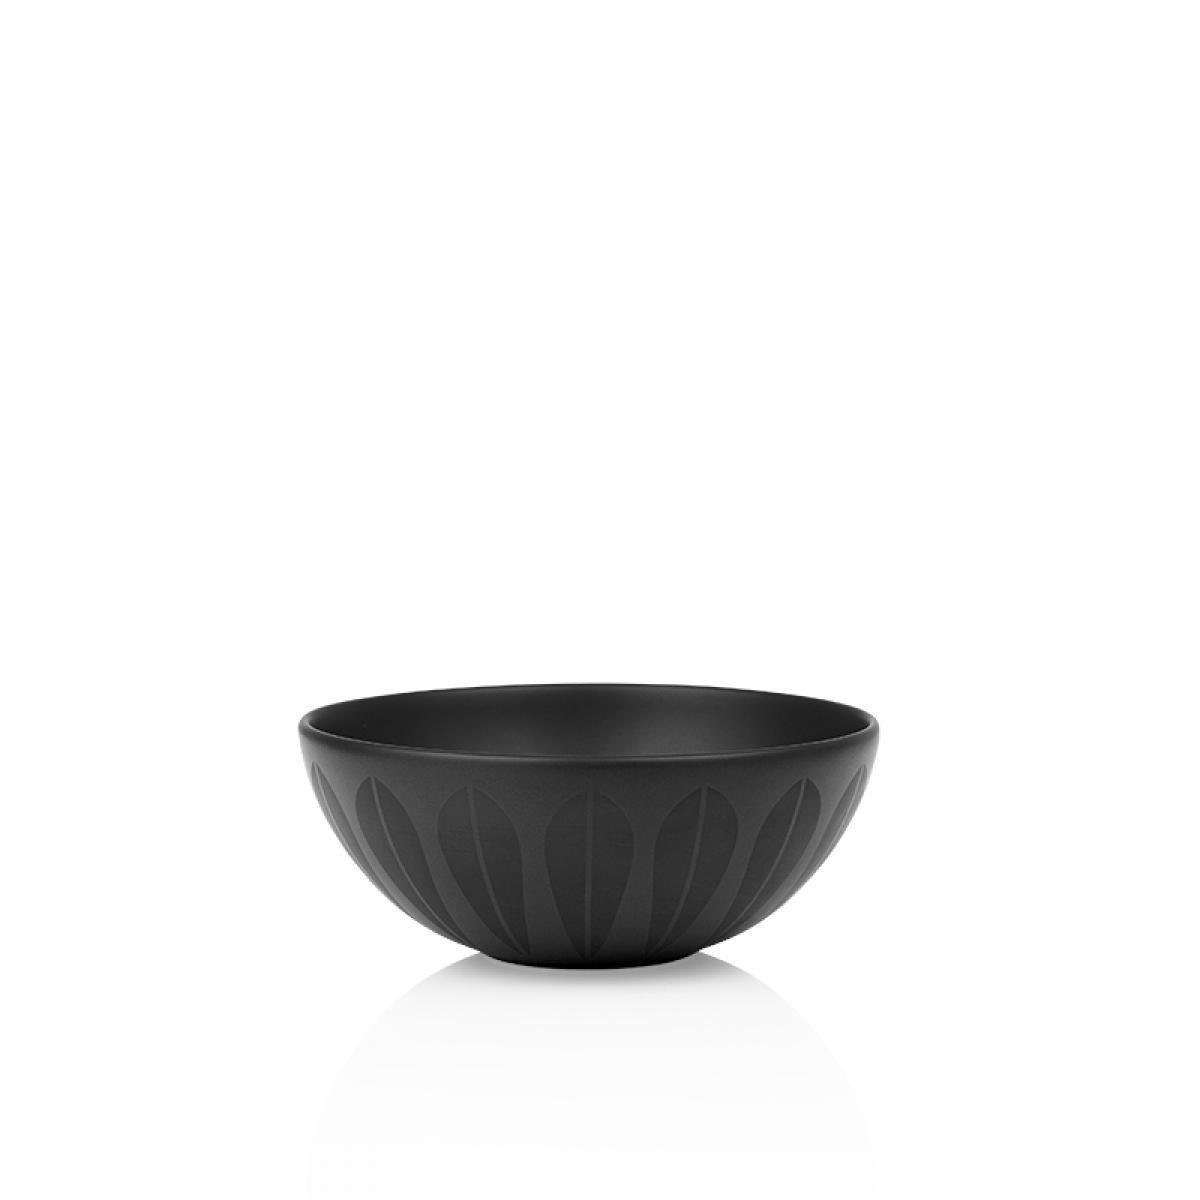 Lucie Kaas Arne Clausen Bowl Black, 18 cm